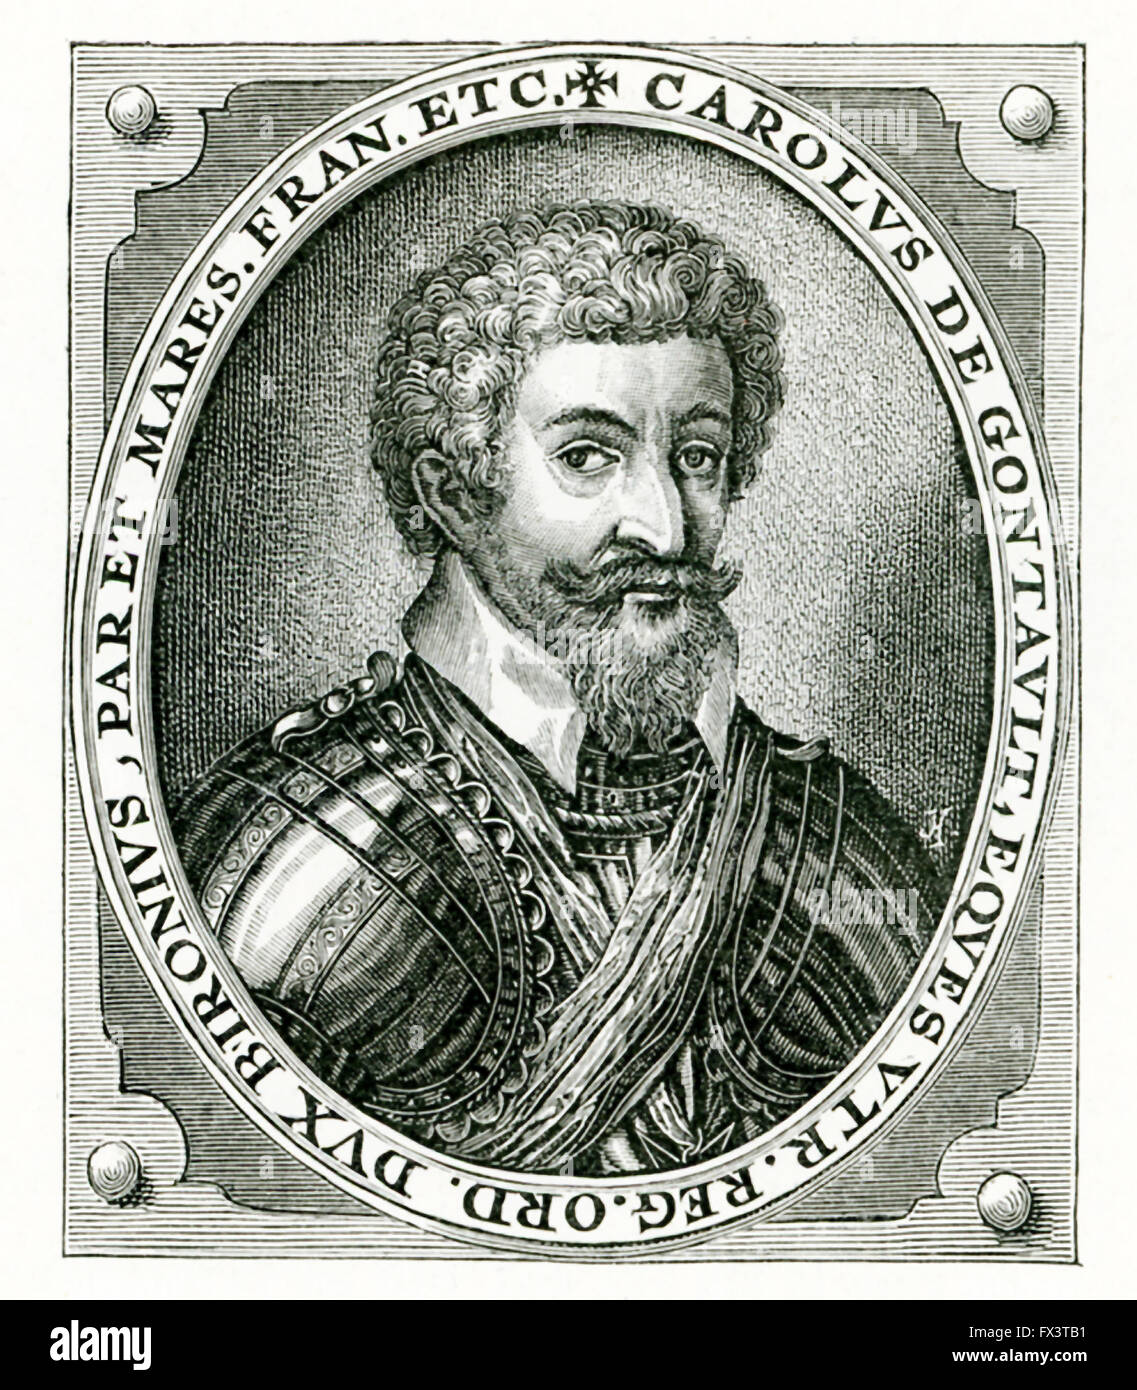 Charles de Gontant-Biron (1562 -1602) a servi de Marshall, de France. Cette gravure date de 1602. Gontant-Biron était un soldat français qui se sont battus pour les dirigeants de la France contre la Ligue catholique. Plus tard, il est aligné avec l'Espagne. Son but était de diviser la France et prendre pour lui le domaine de Bourgogne qu'il ferait dans un royaume. Pour ses actions, il a décapité à la Bastille. Il a servi de base pour le personnage de Berowne dans Shakespeare Love's Labour Lost. Banque D'Images